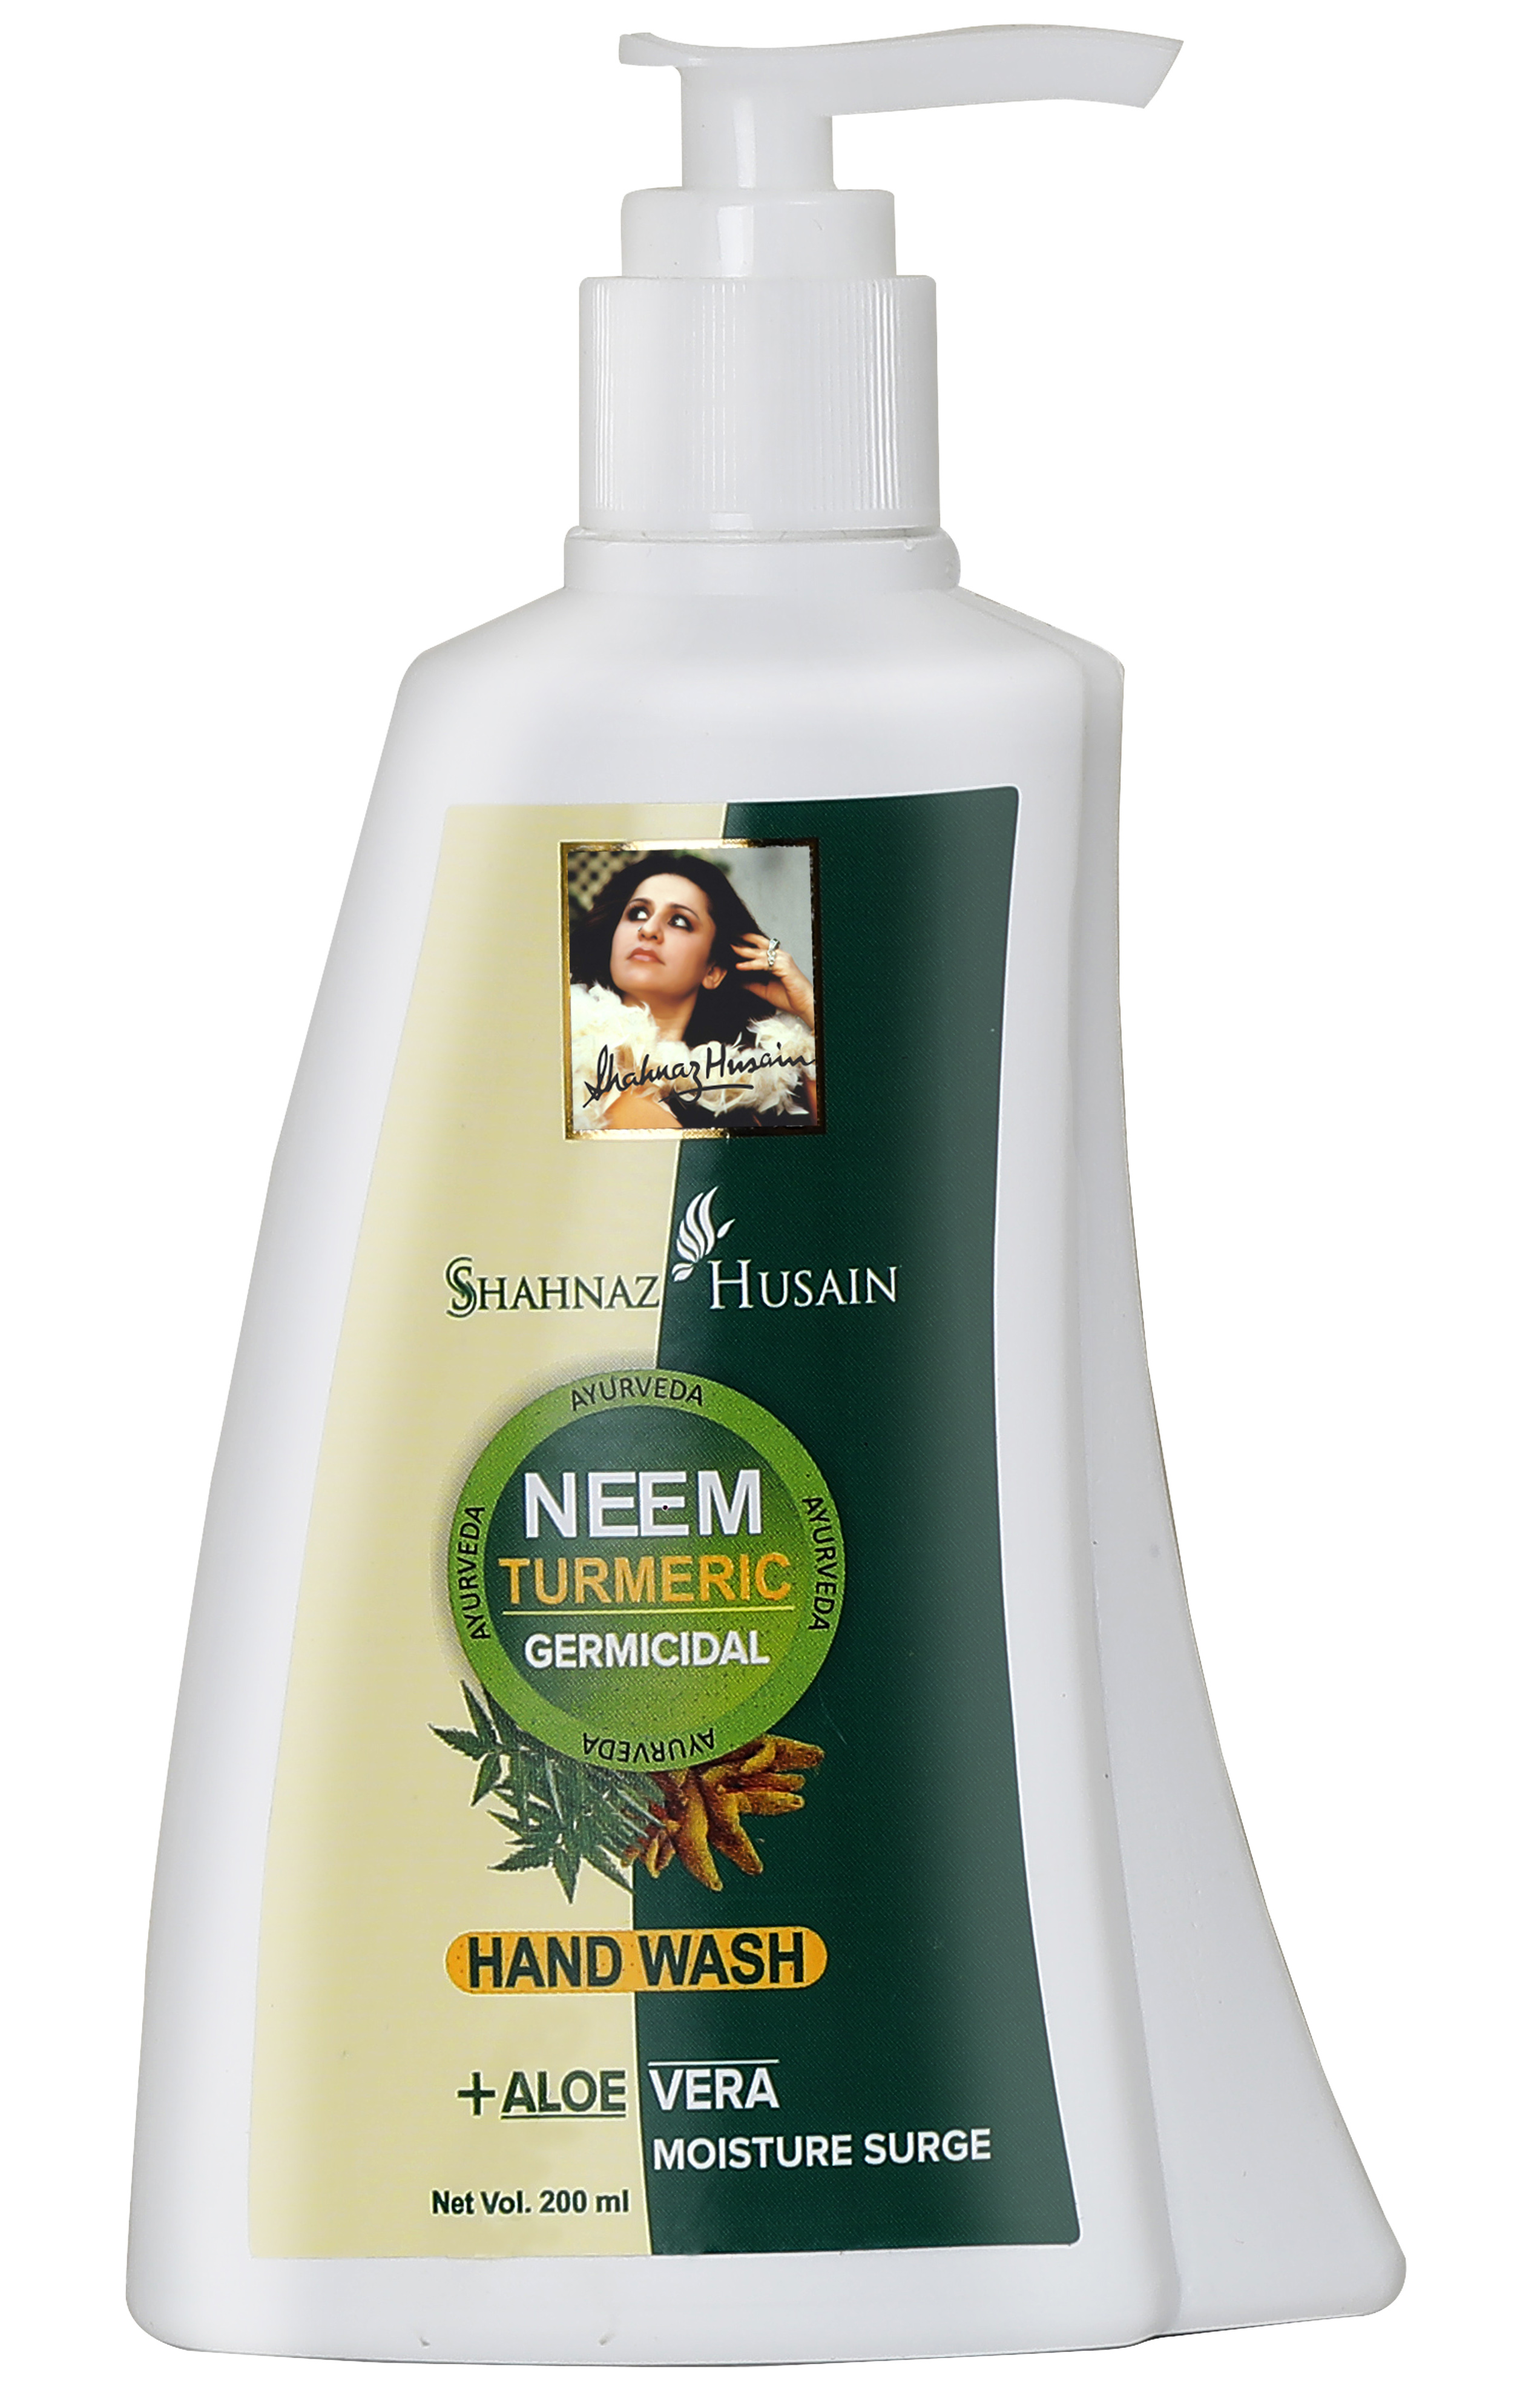 Shahnaz Husain Neem Turmeric Hand Wash